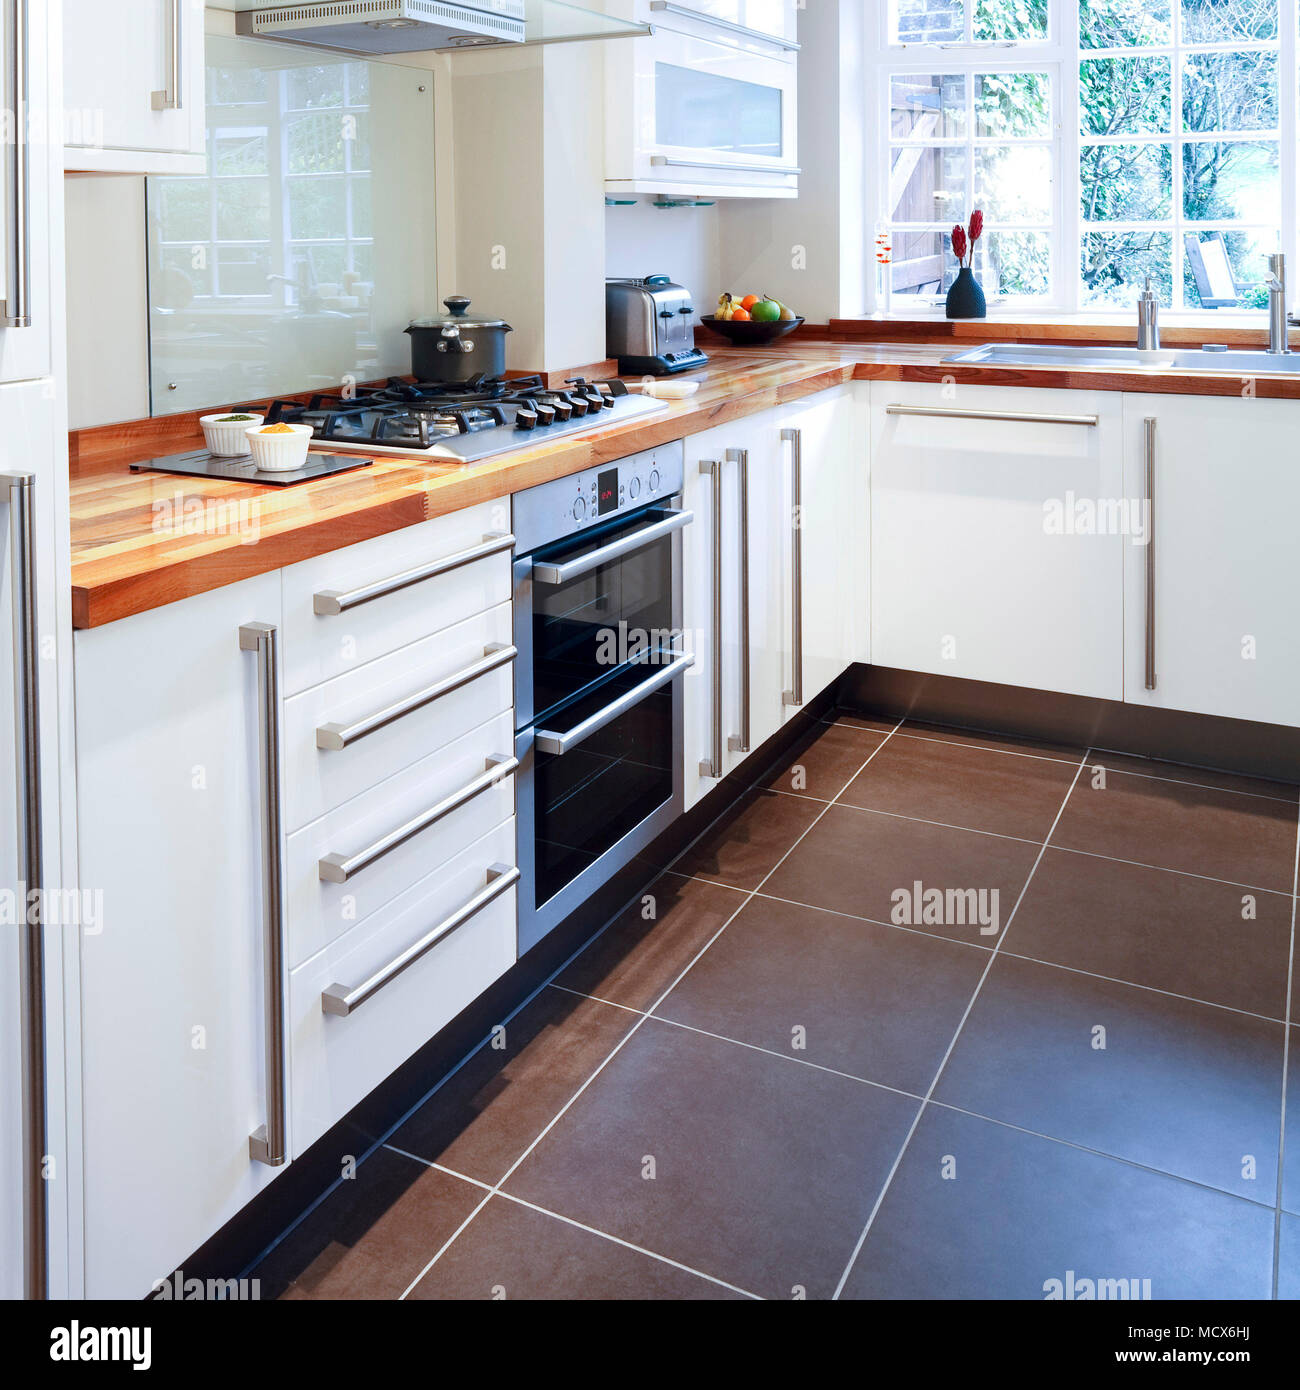 Modular cucina bianca con piani in legno e applicazioni in acciaio inossidabile Foto Stock